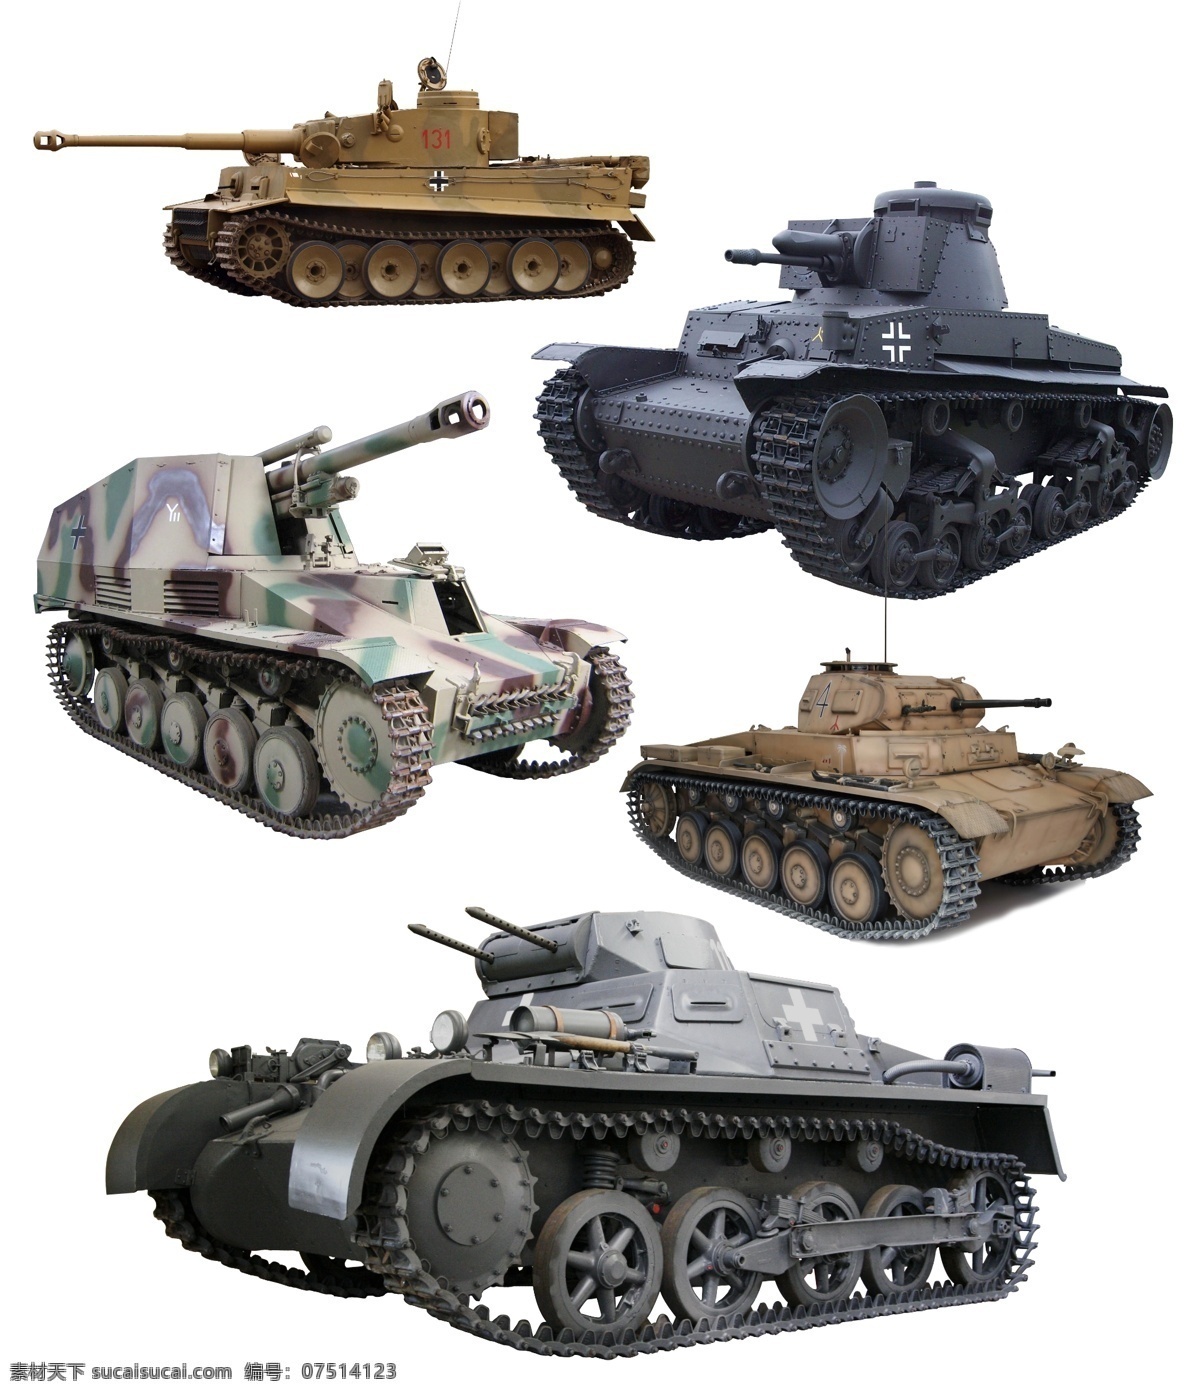 二战德国坦克 德国坦克 1号坦克 闪电战 闪击战 虎式坦克 二次大战 二战 二战德军 装甲部队 德国 pzkpf 中型坦克 装甲车 武器 战争 军事 坦克 战车 装甲 分层